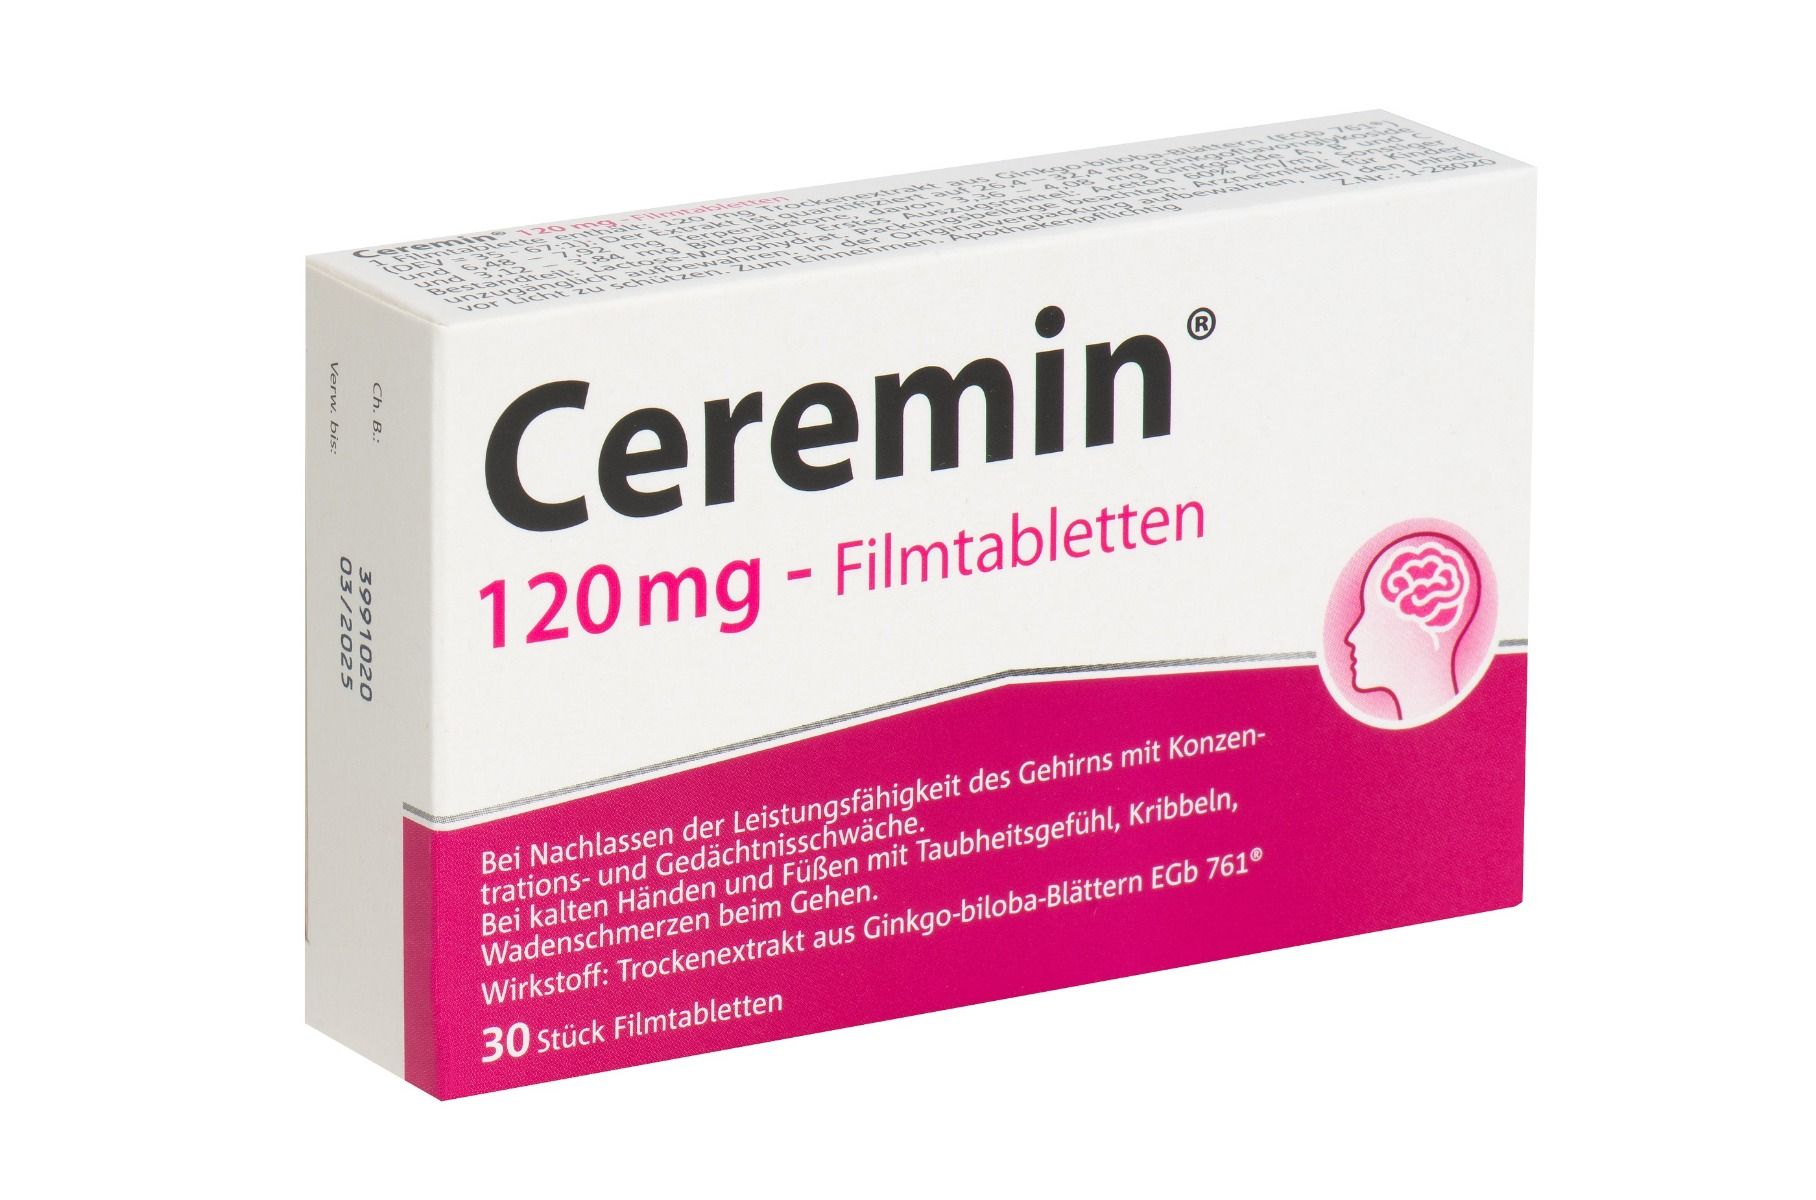 Abbildung Ceremin 120 mg - Filmtabletten